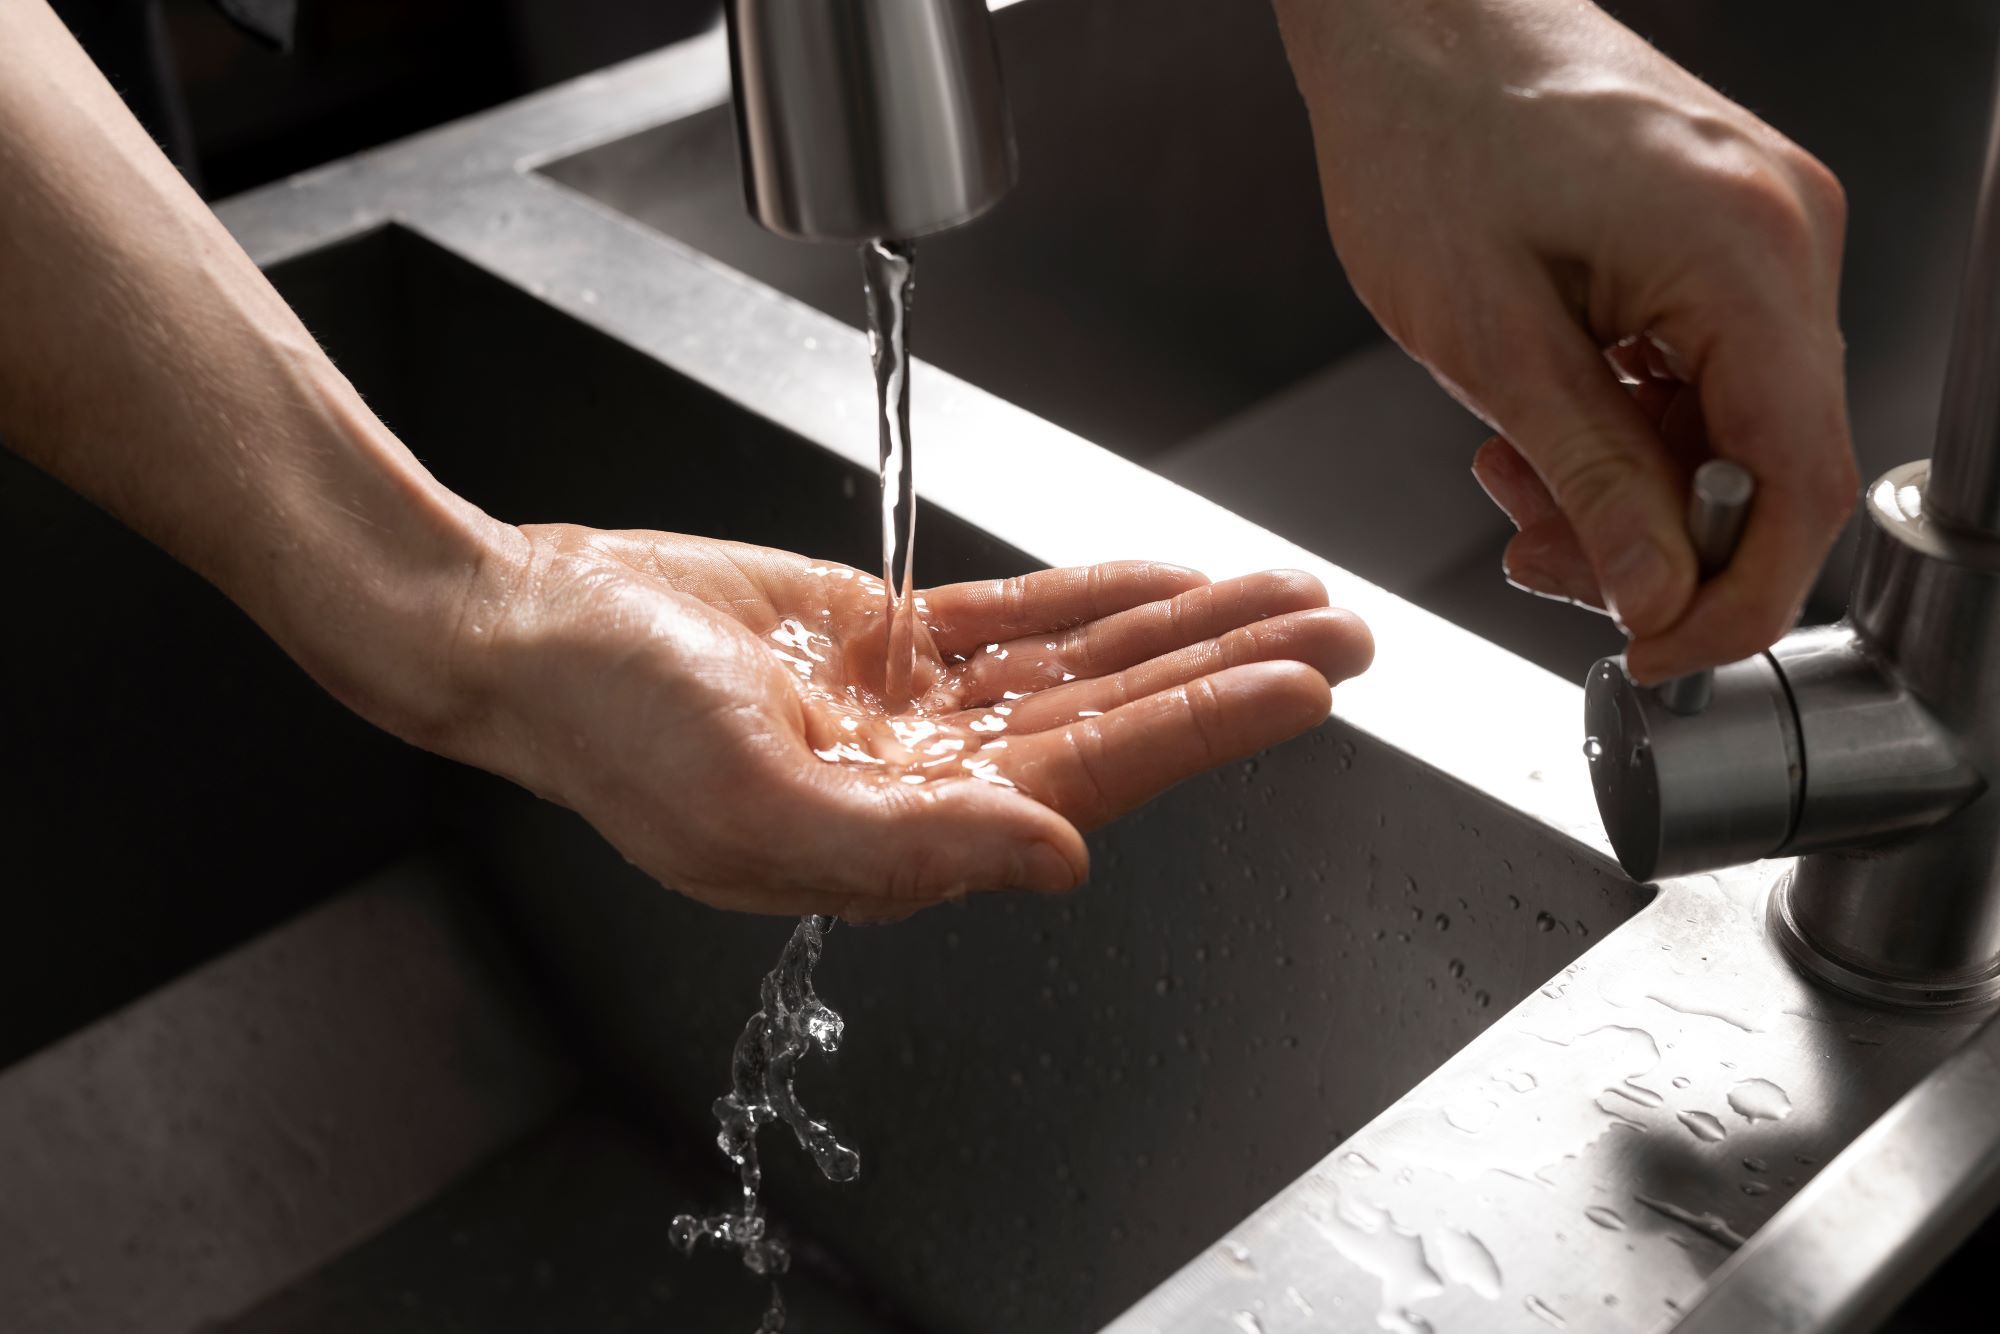 acercamiento al lavado manos higienico 002 Moncloa